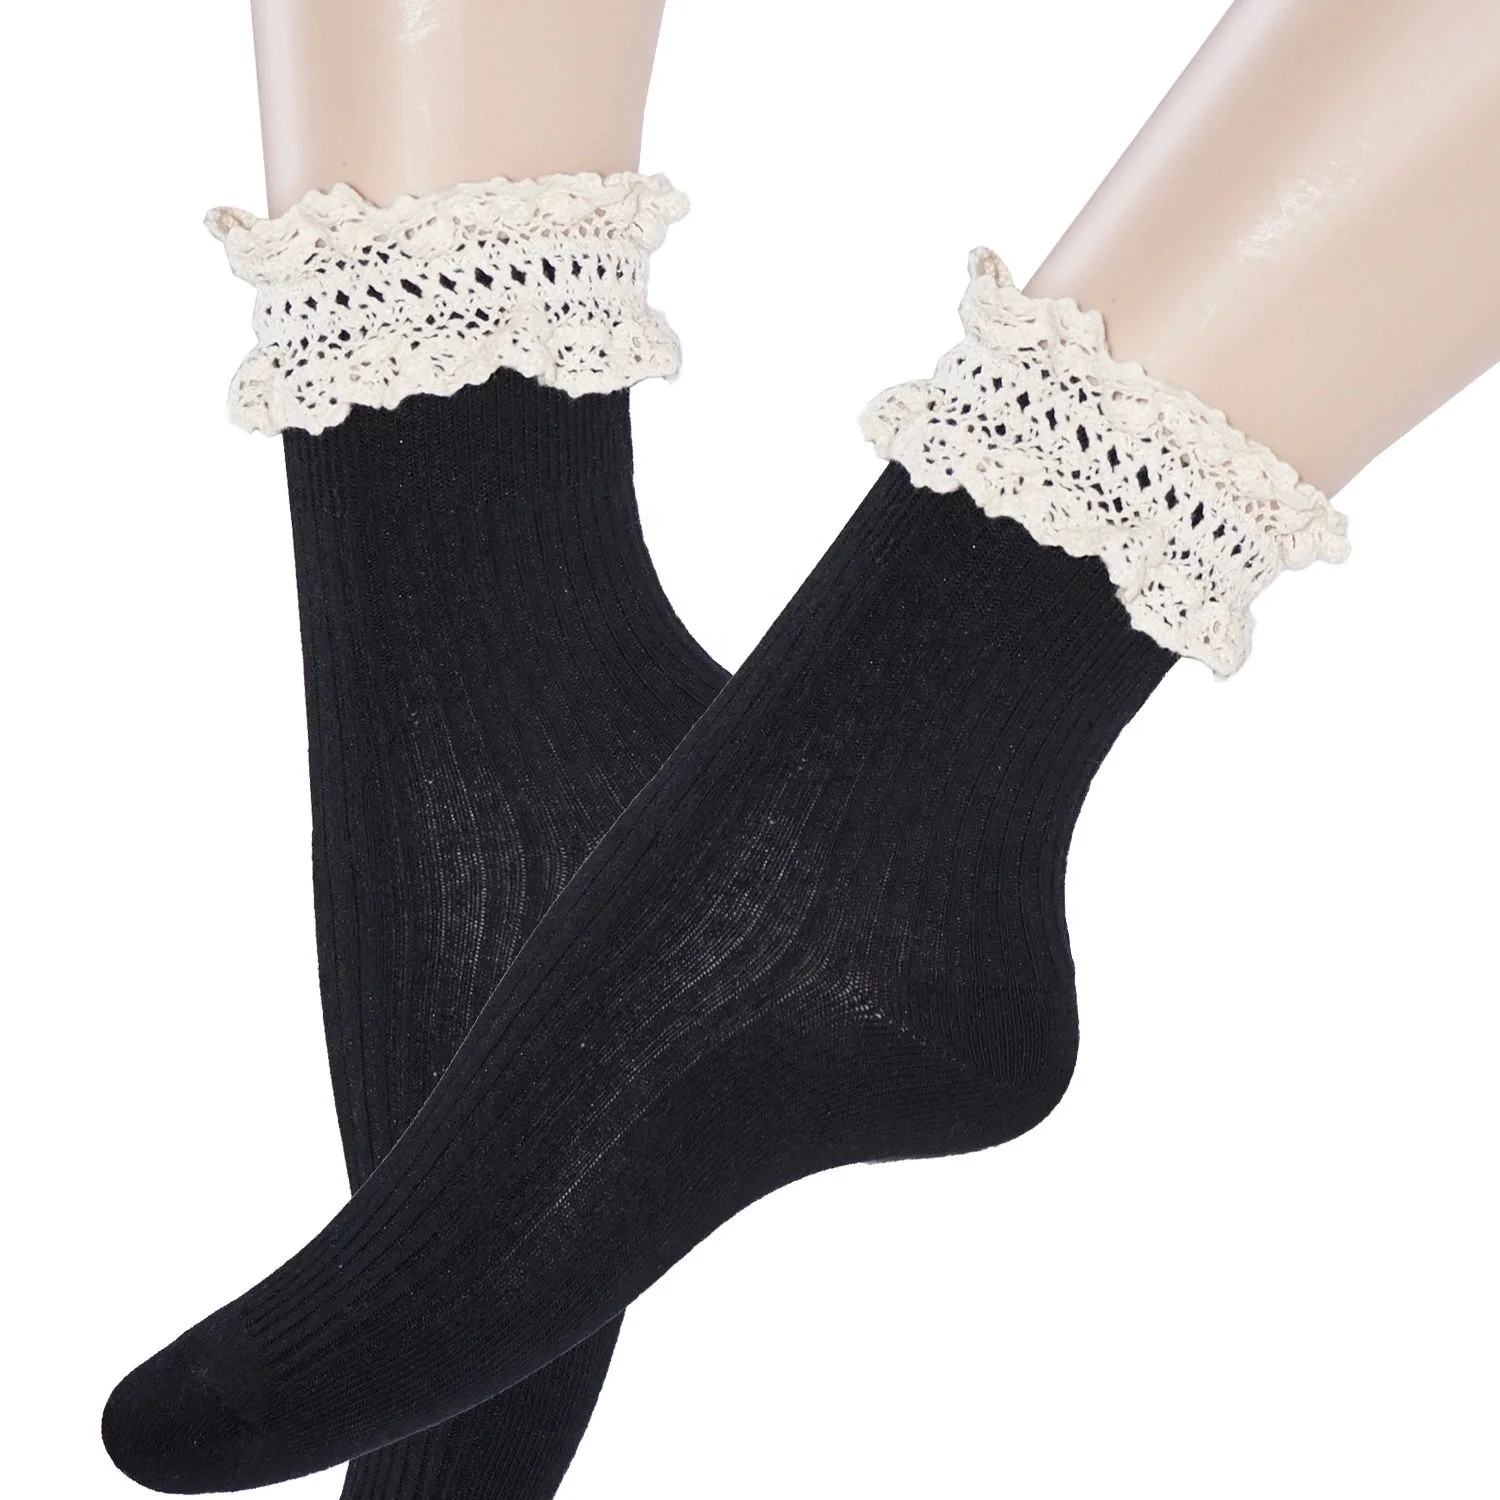 Lace Peachyforum Cute Teenage Girls Ankle Socks - Buy Peachyforum Cute ...